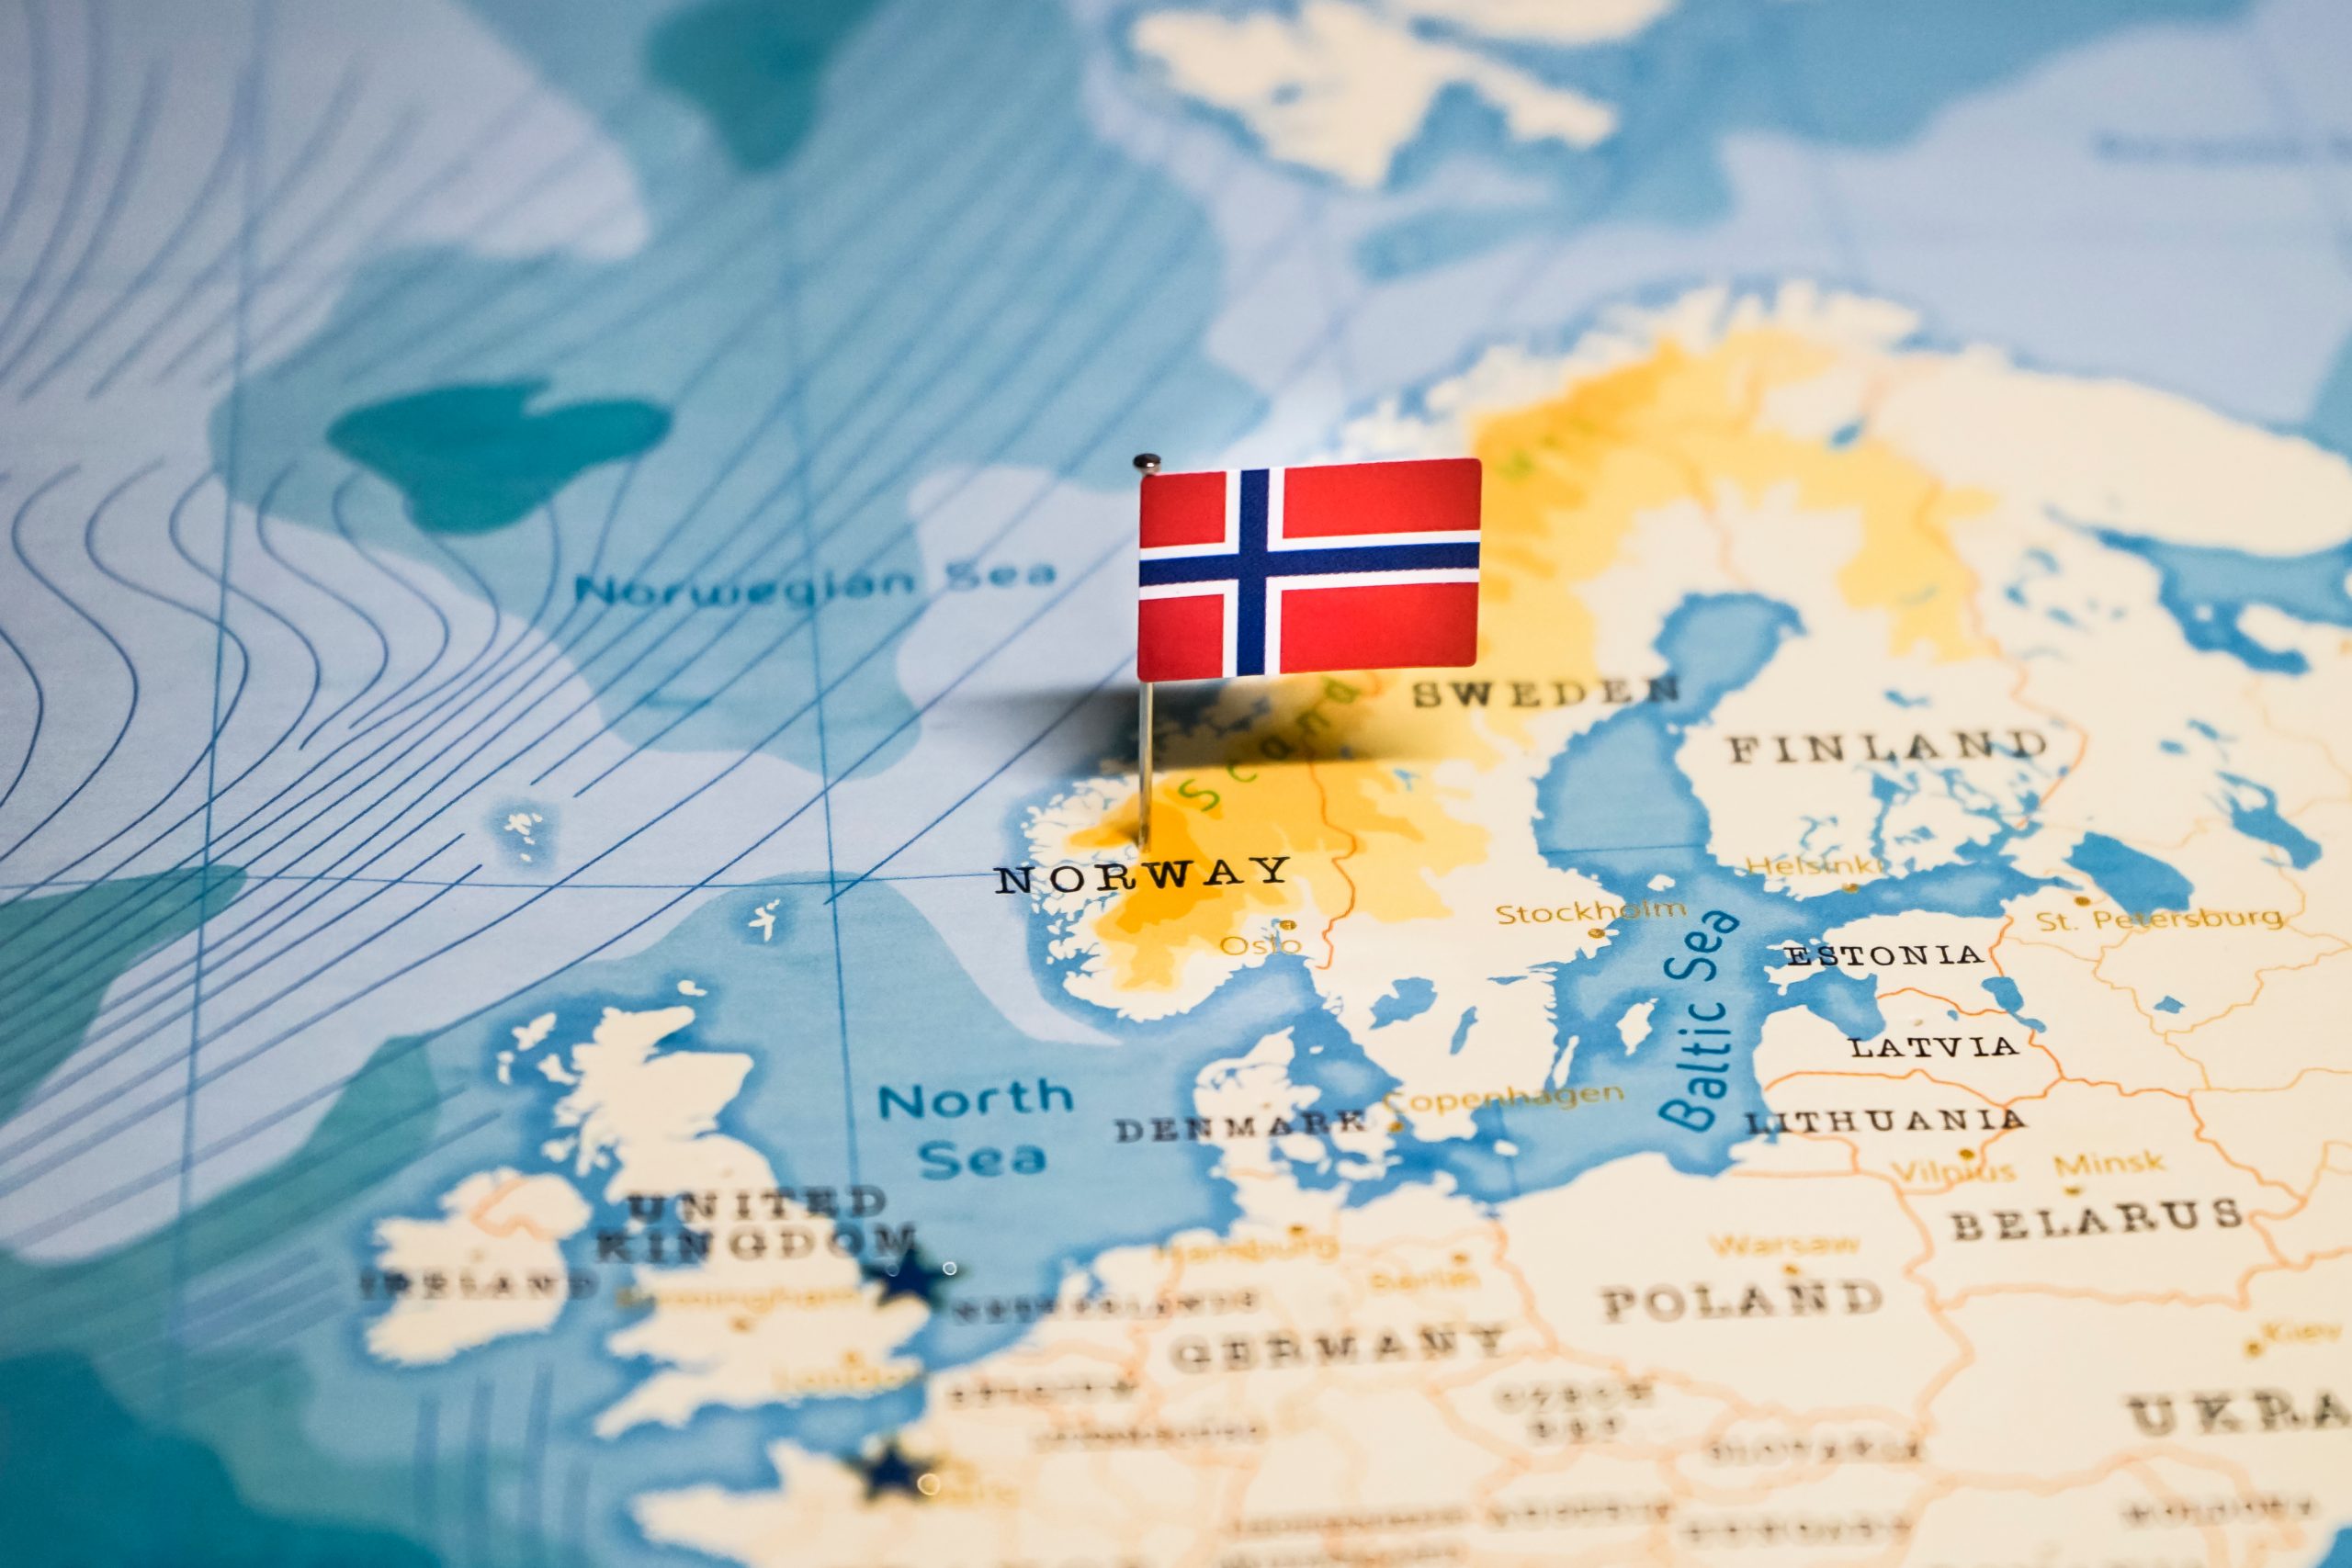 النرويج تخطط لرفع قيود السفر من وإلى دول أوروبية معينة اعتبارًا من 15 يوليو